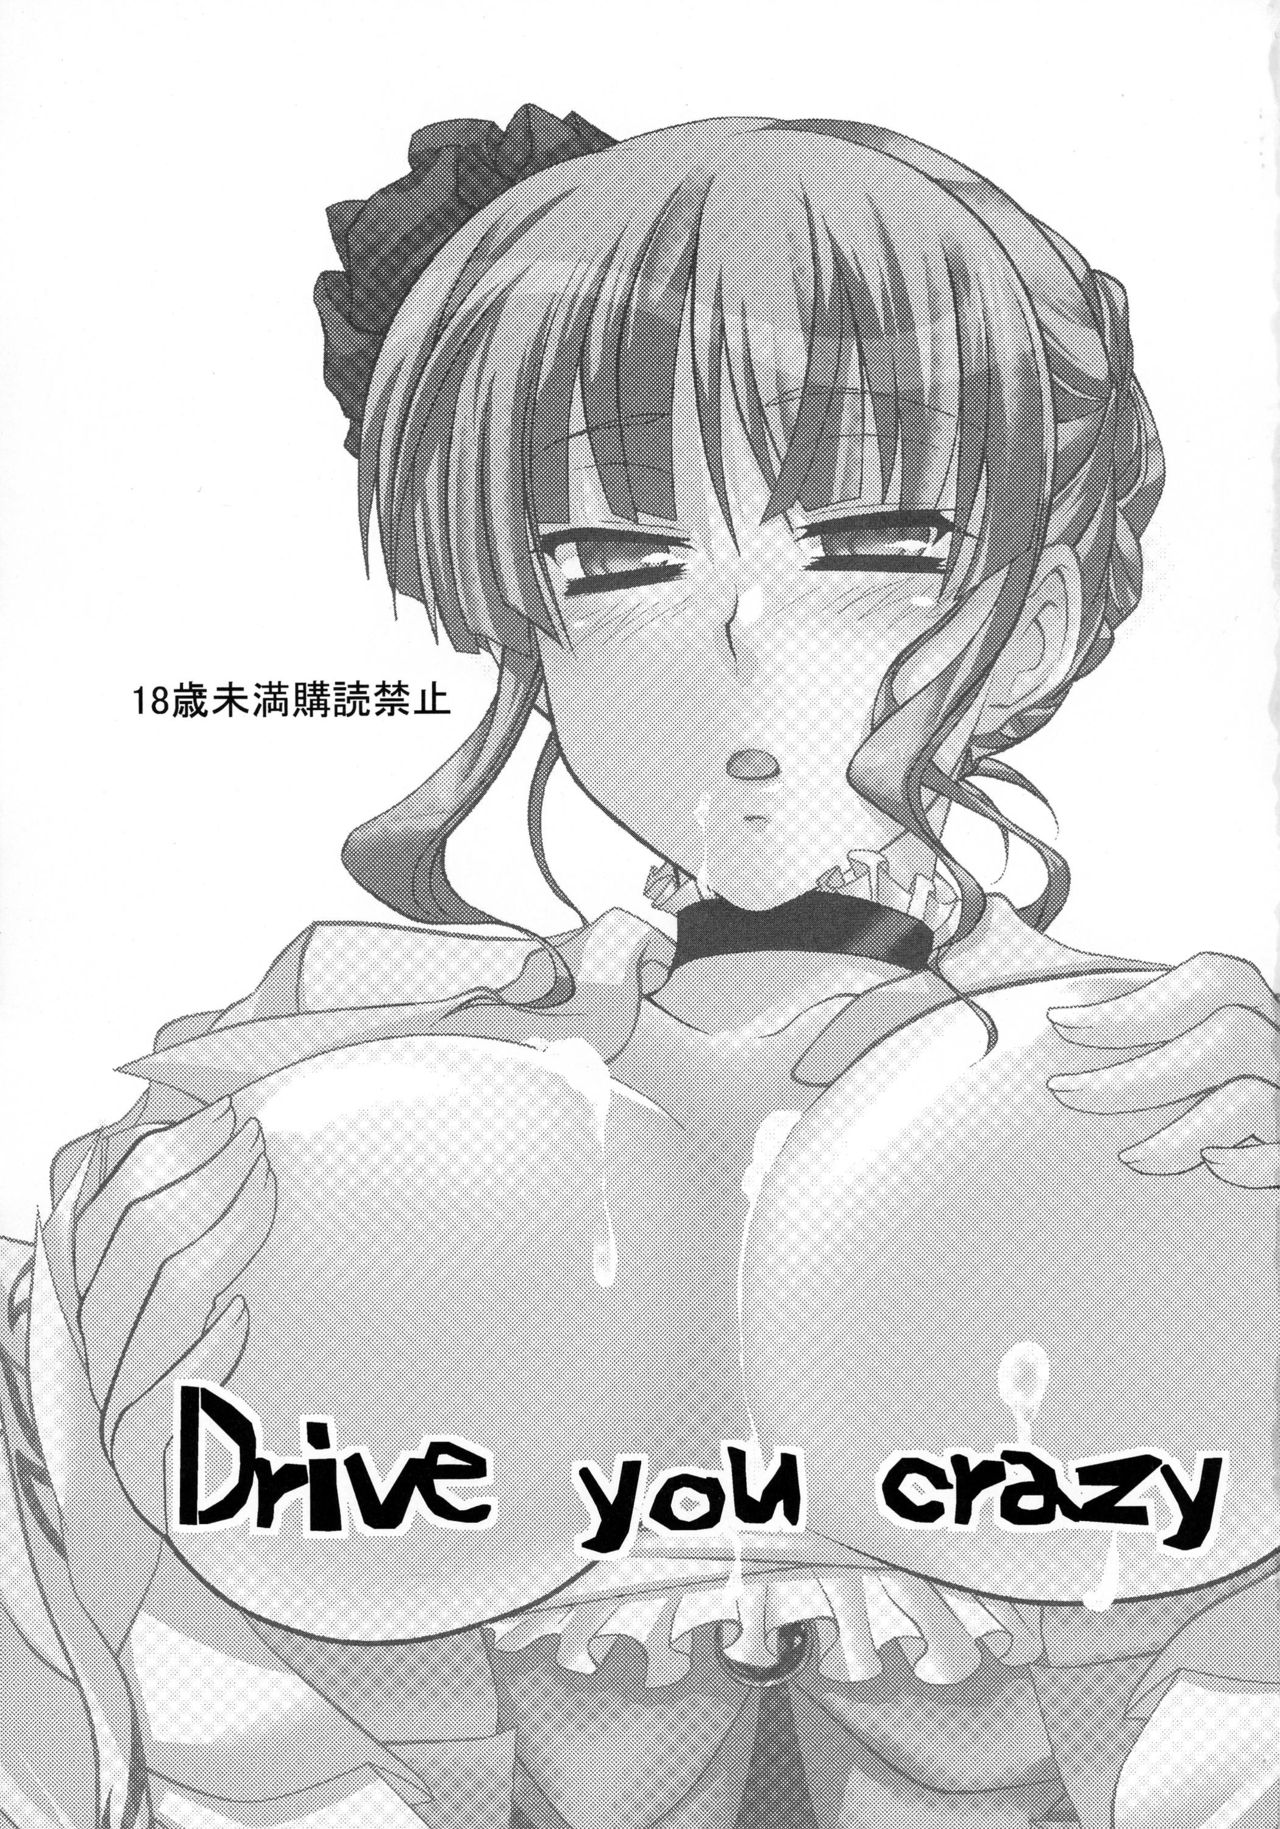 [10/der (こもだ)] Drive you crazy (うみねこのなく頃に) [2009年2月22日]